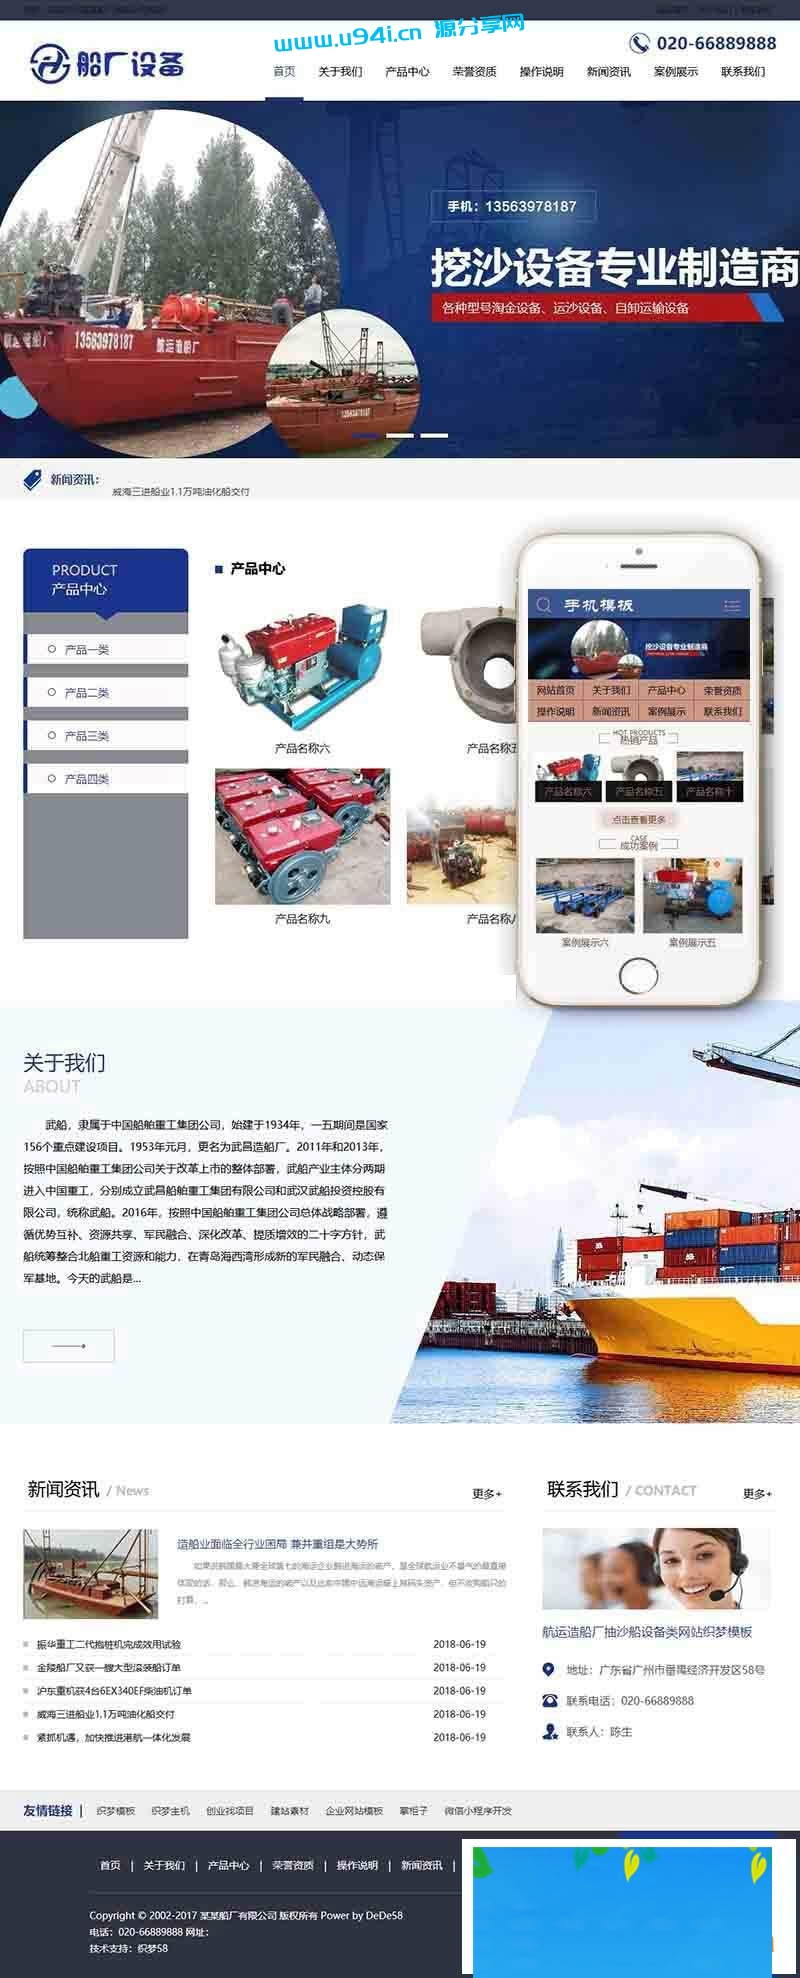 织梦dedecms航运造船厂抽沙船设备企业网站模板(带手机移动端)